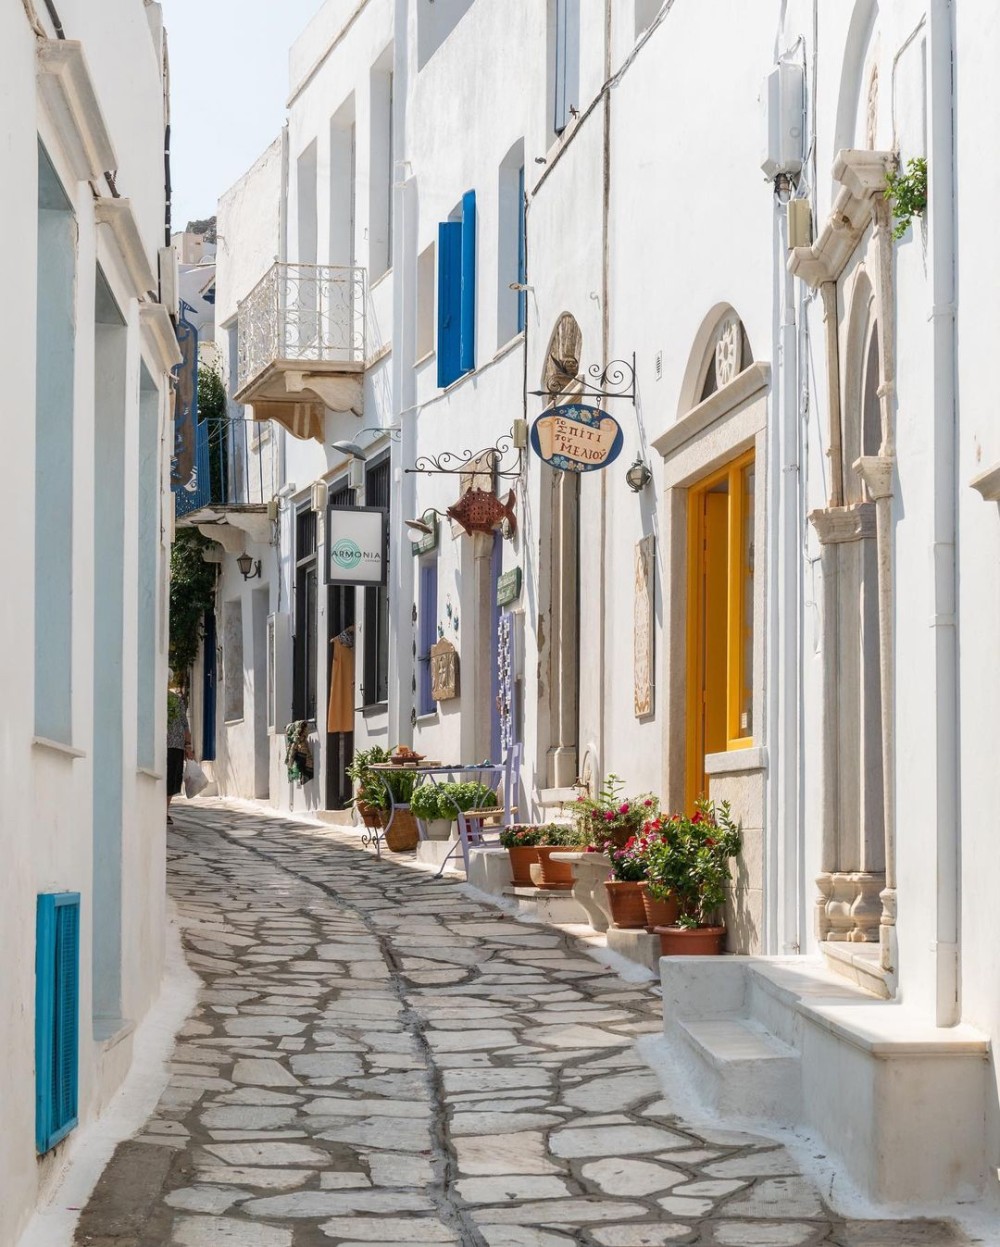 Τα νησιά πήραν τα μυαλά δημοσιογράφου των New York Times που έκανε διακοπές στην Ελλάδα